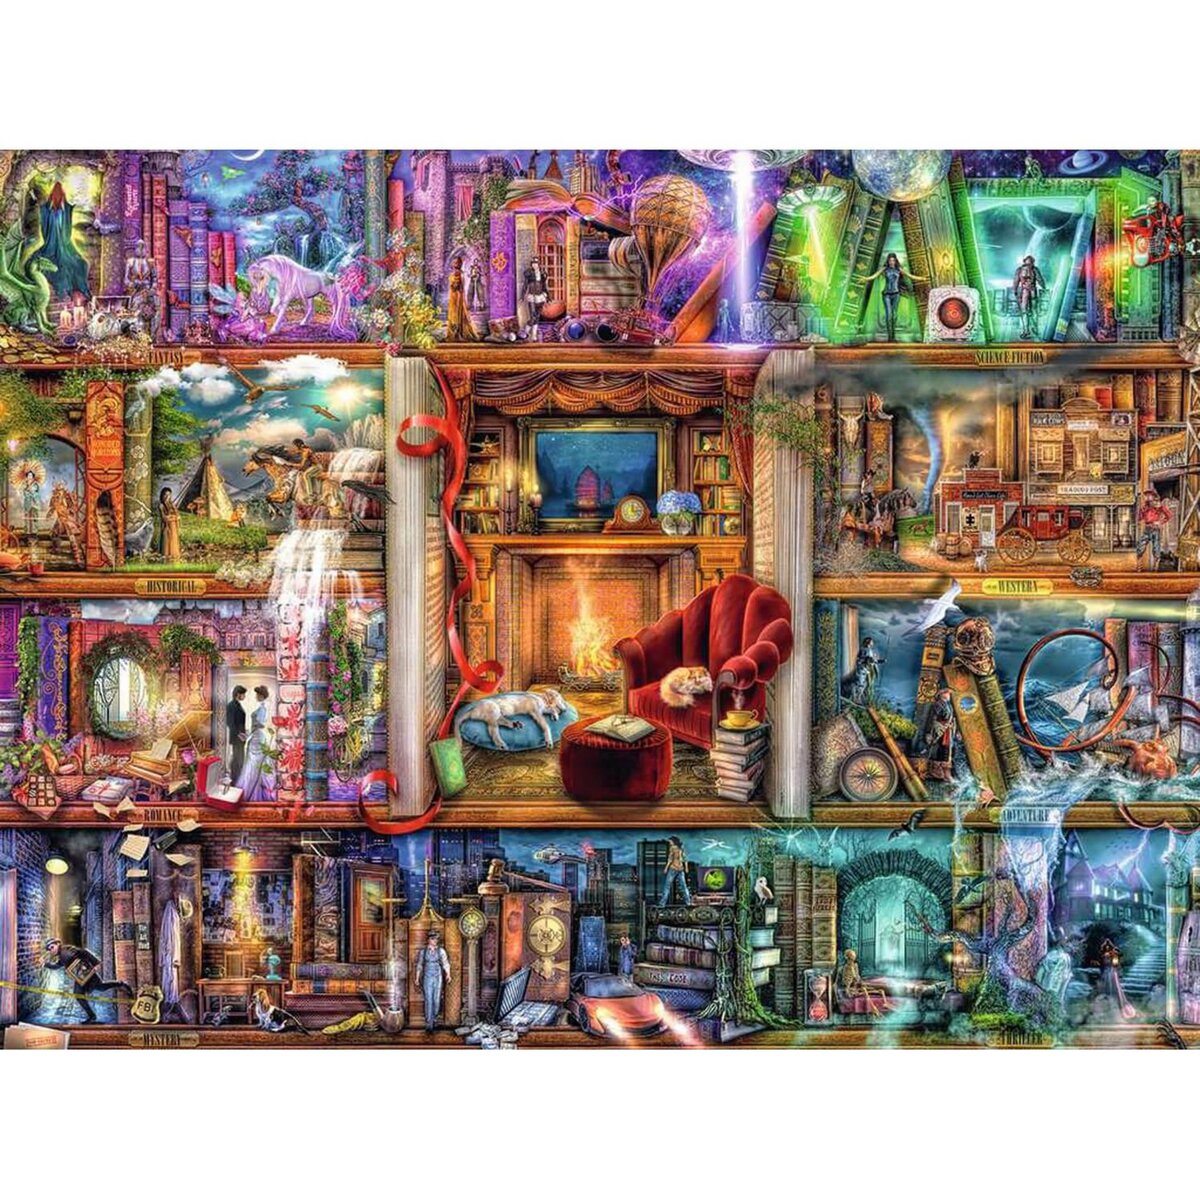 Puzzle Ravensburger Chat de l'espace - Puzzle - 1500 pièces